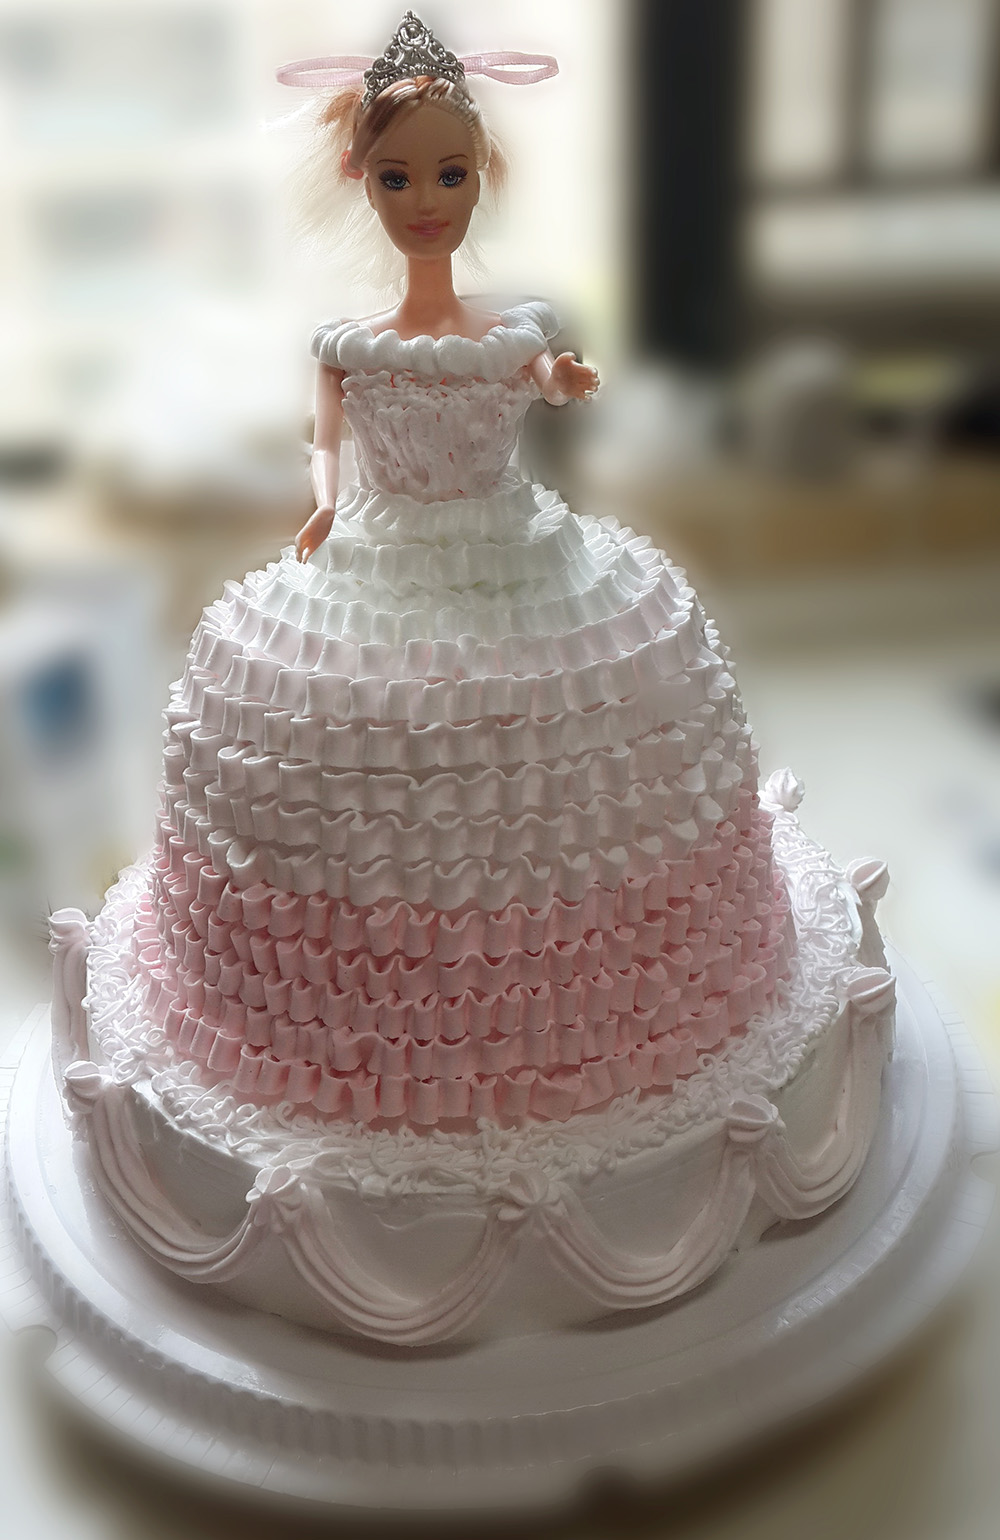 武汉同城配送 芭比蛋糕 渐变公主蛋糕 生日蛋糕创意蛋糕